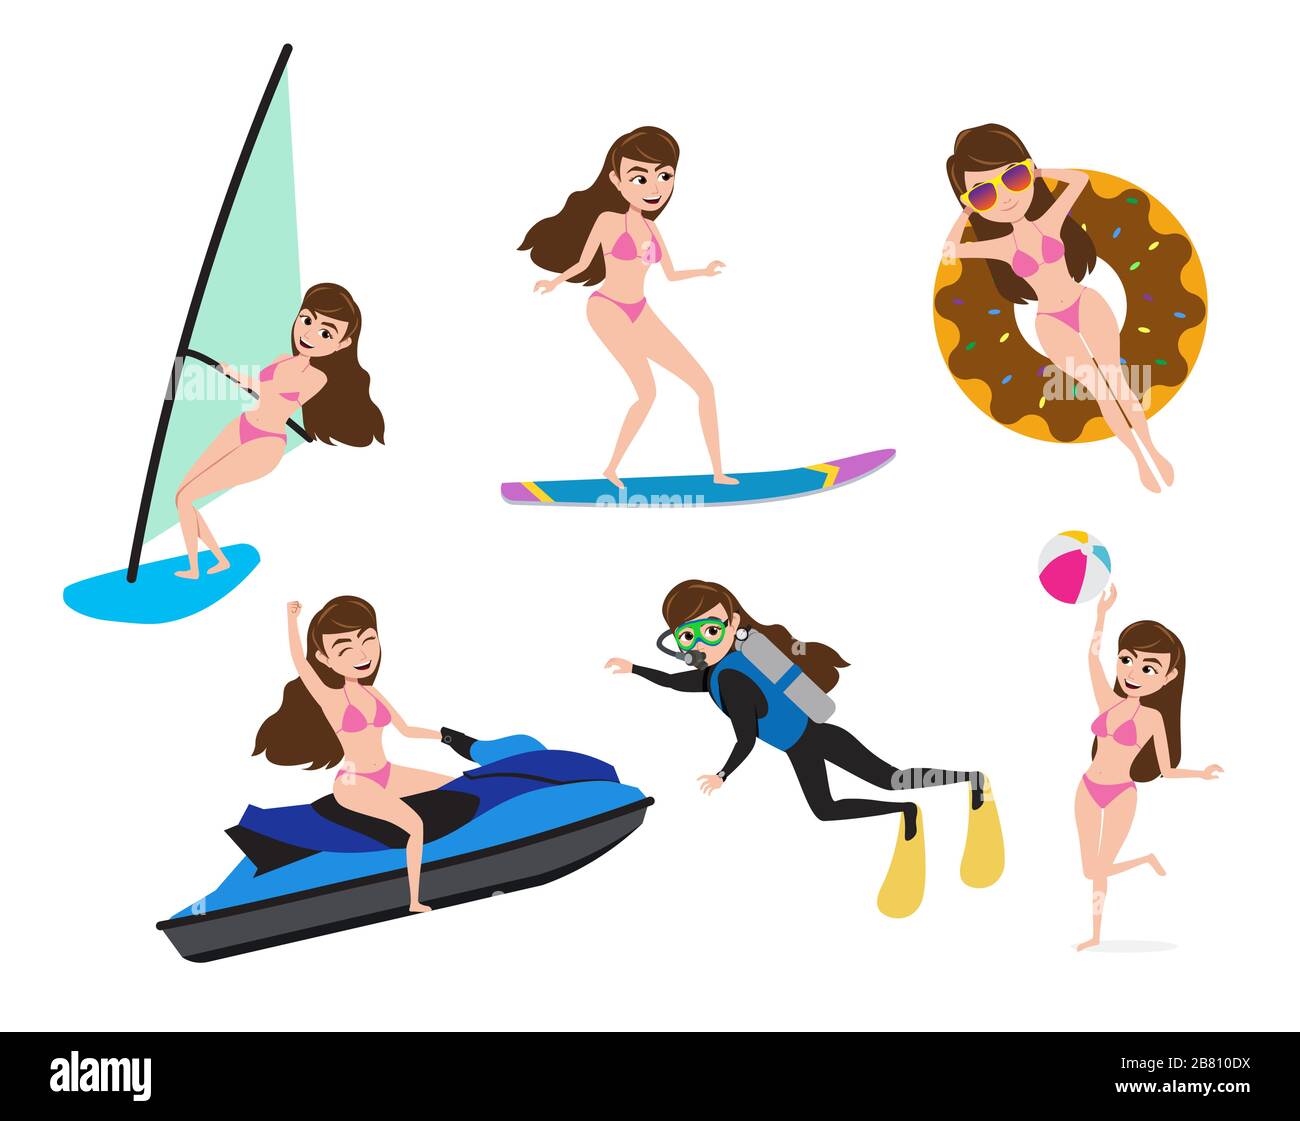 Actividad de verano mujer personajes vector conjunto. Carácter femenino en verano de deportes acuáticos como esquí acuático, surf, buceo y agua. Ilustración del Vector